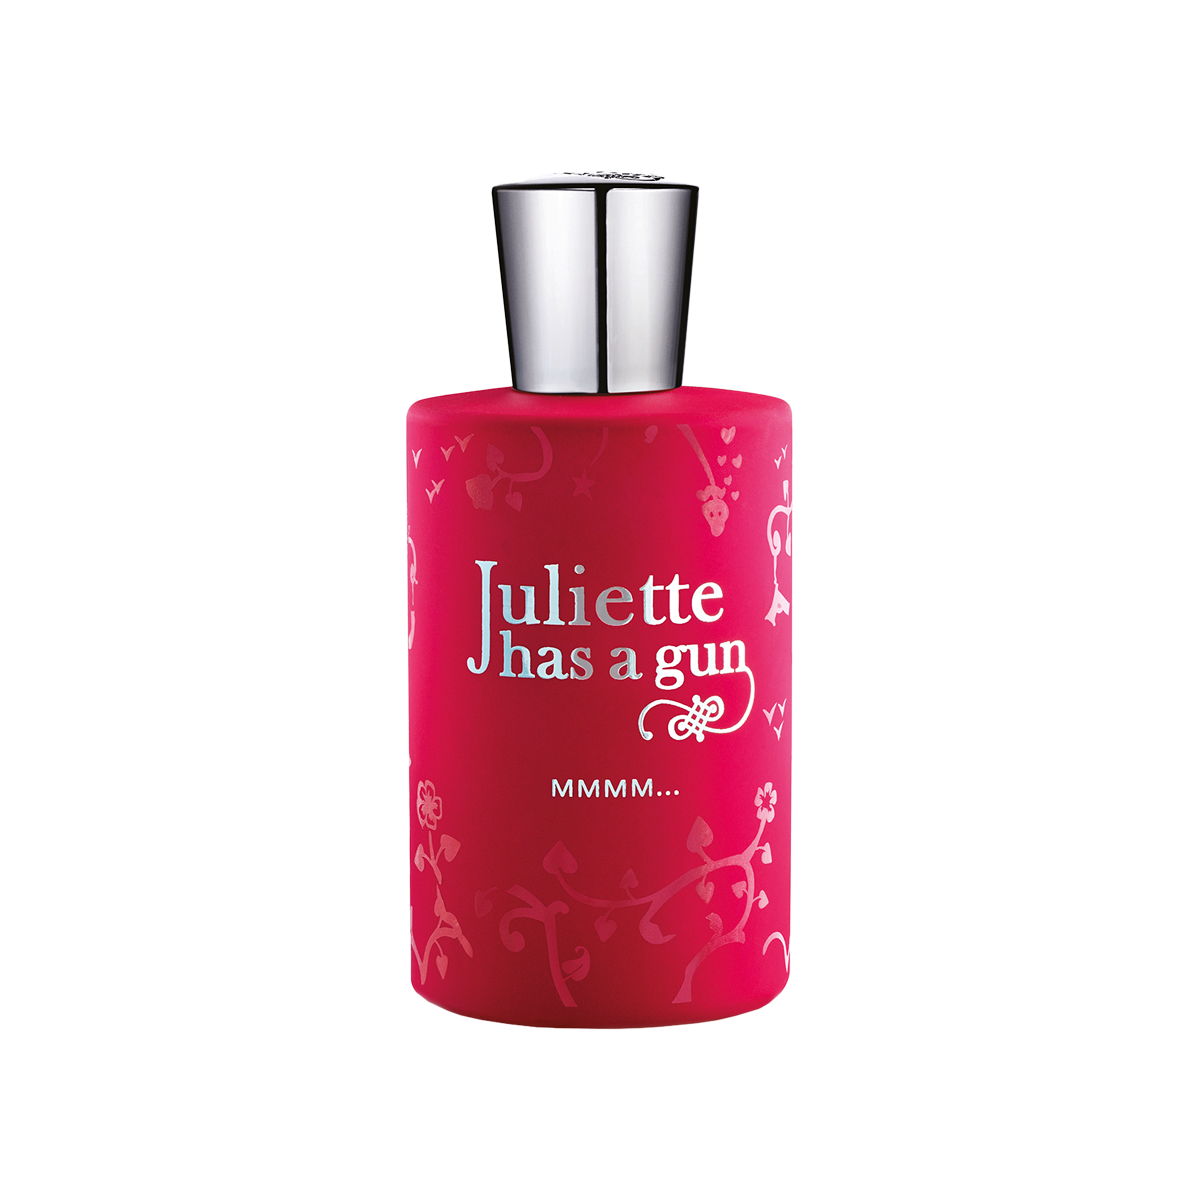 Juliette has a Gun - MMMM… Eau de Parfum